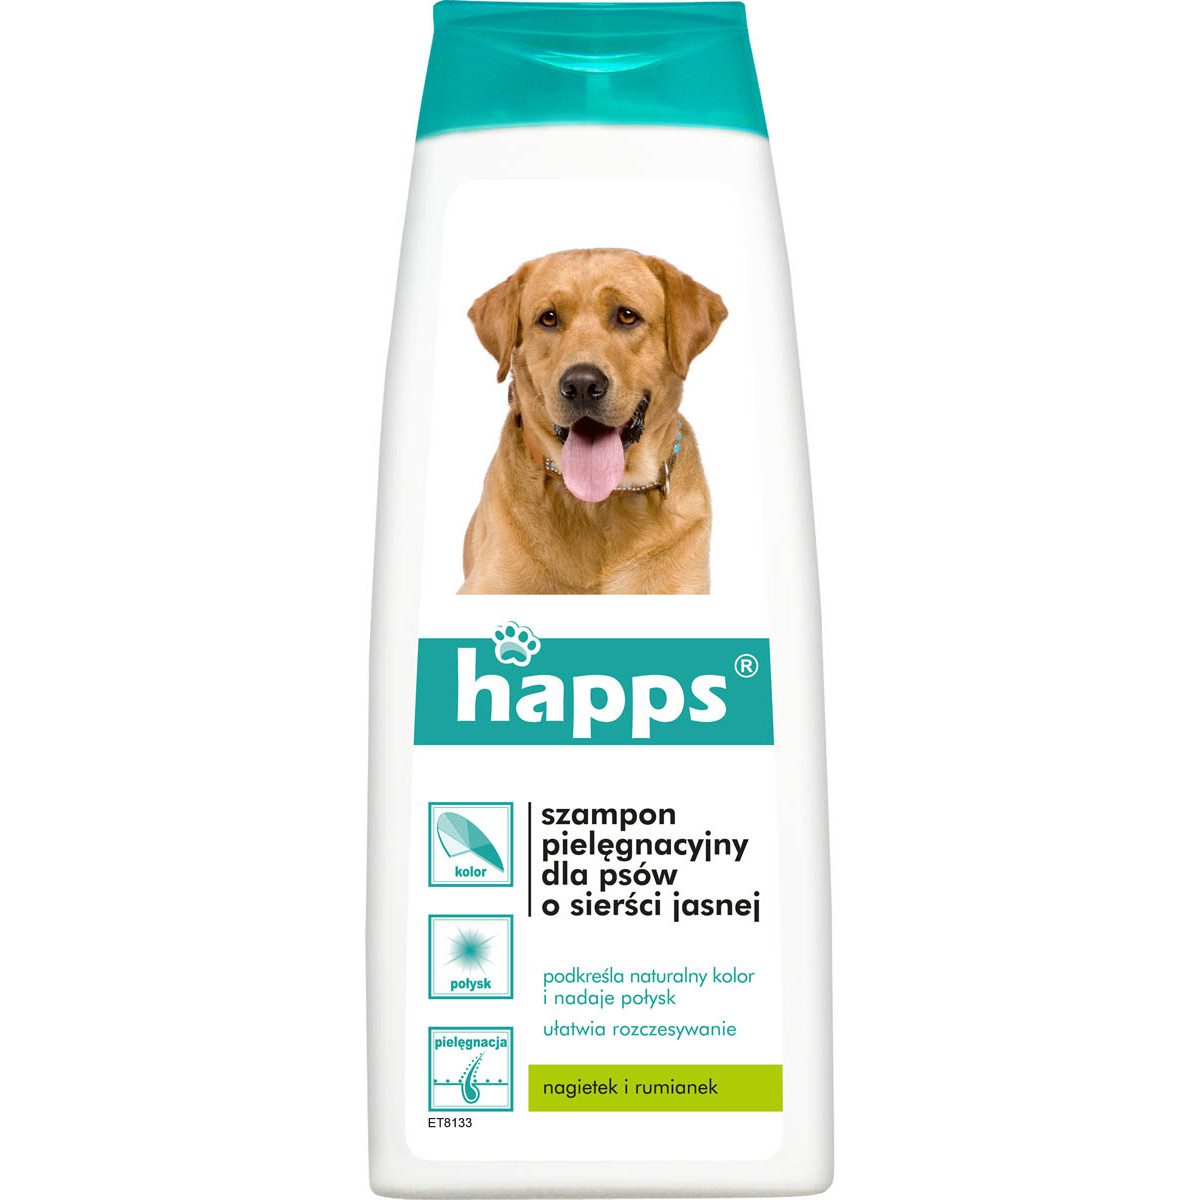 Happs Szampon pielęgnacyjny dla psów o sierści jasnej 200ml